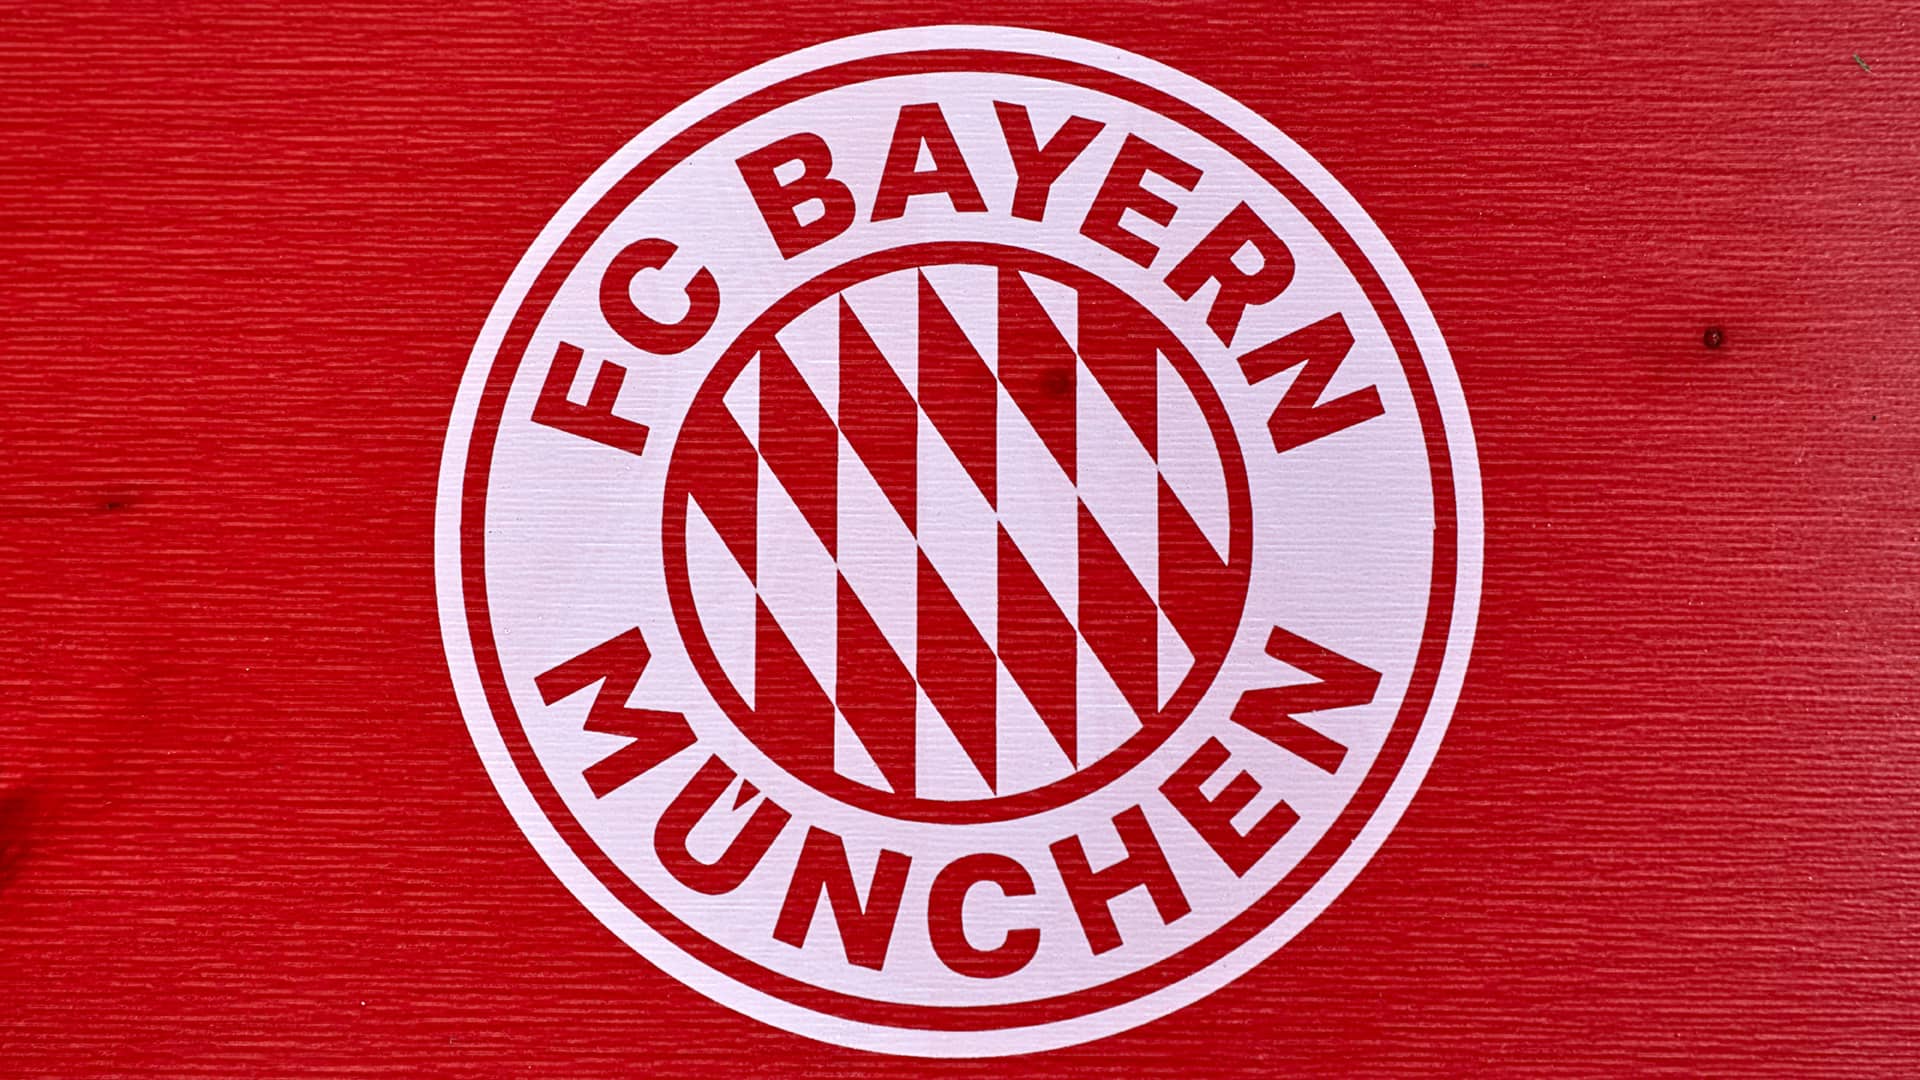 Eine Draufsicht auf das Design der Bierzeltgarnitur mit Lehne FC Bayern München.